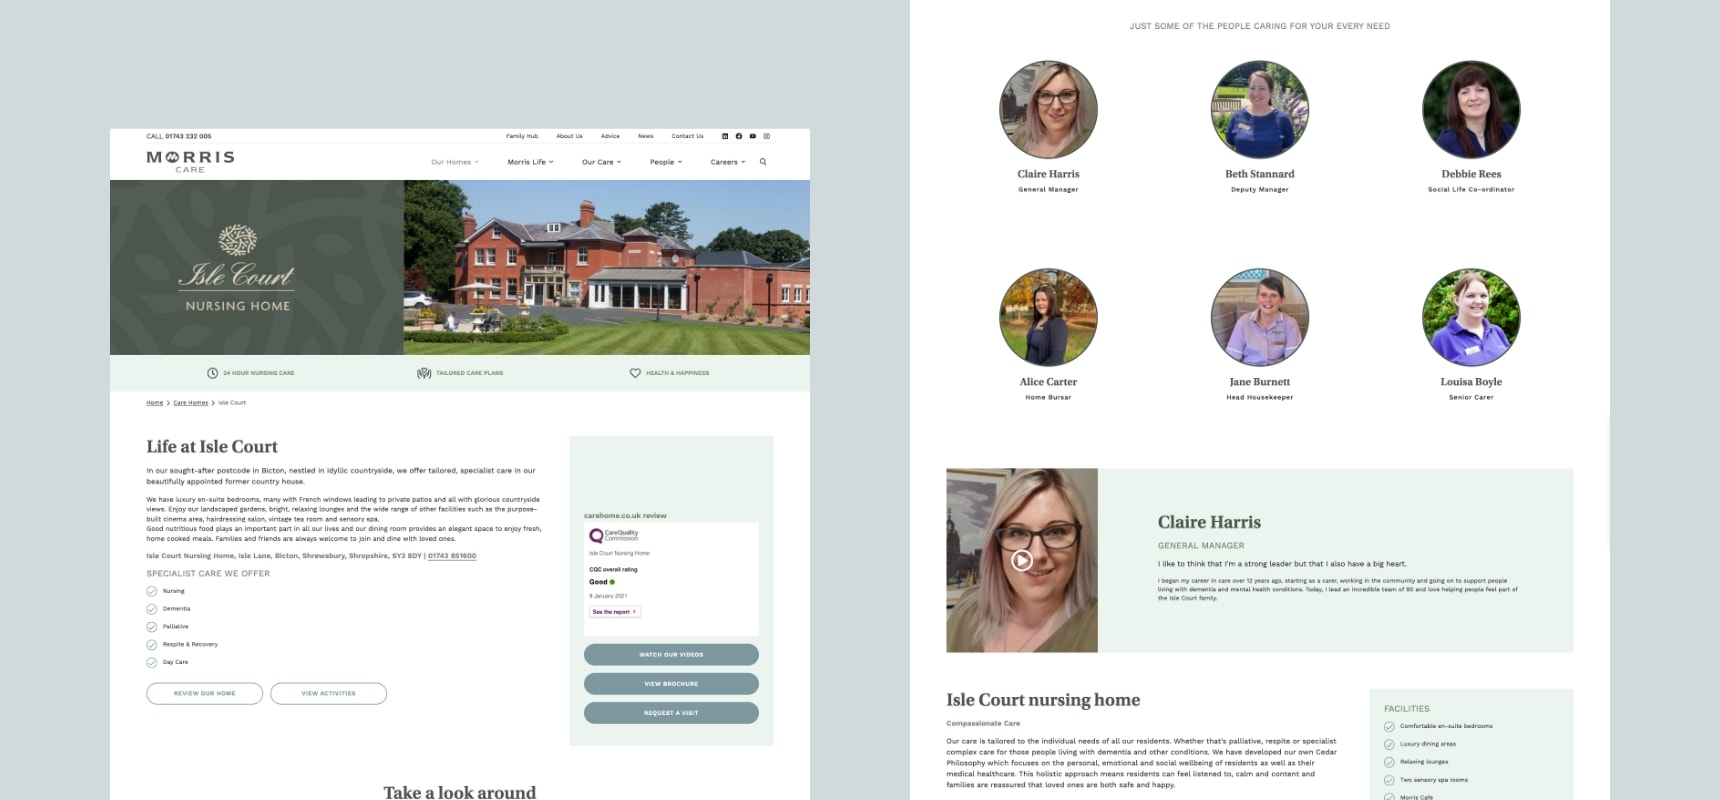 Desktop website design of the care home information page